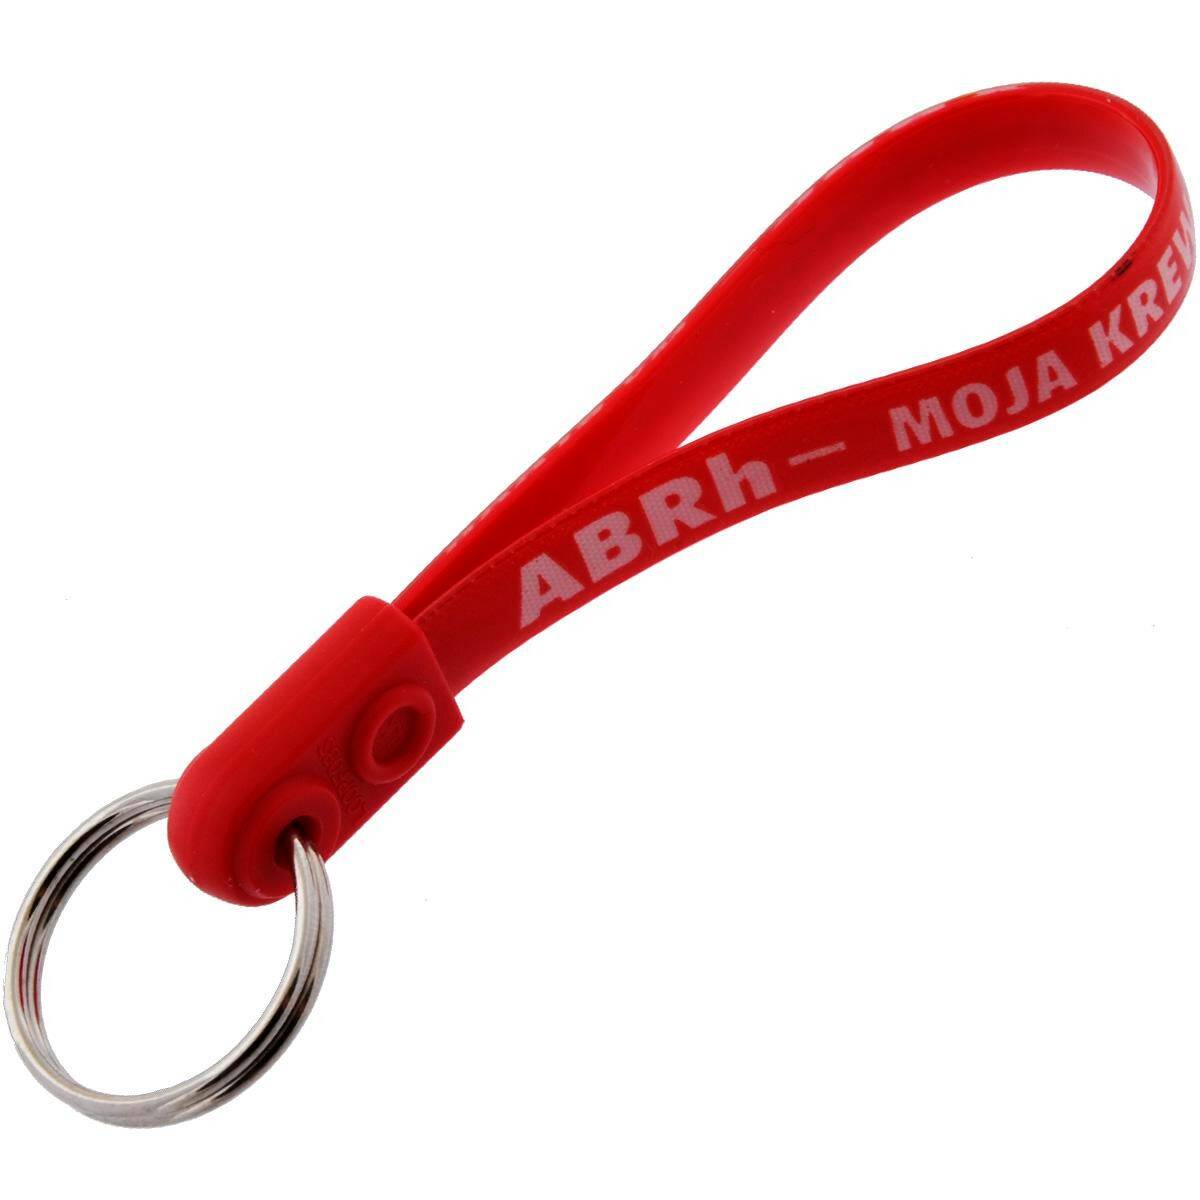 Schlüsselanhänger mit gürtel - ABRh- MOJA KREW